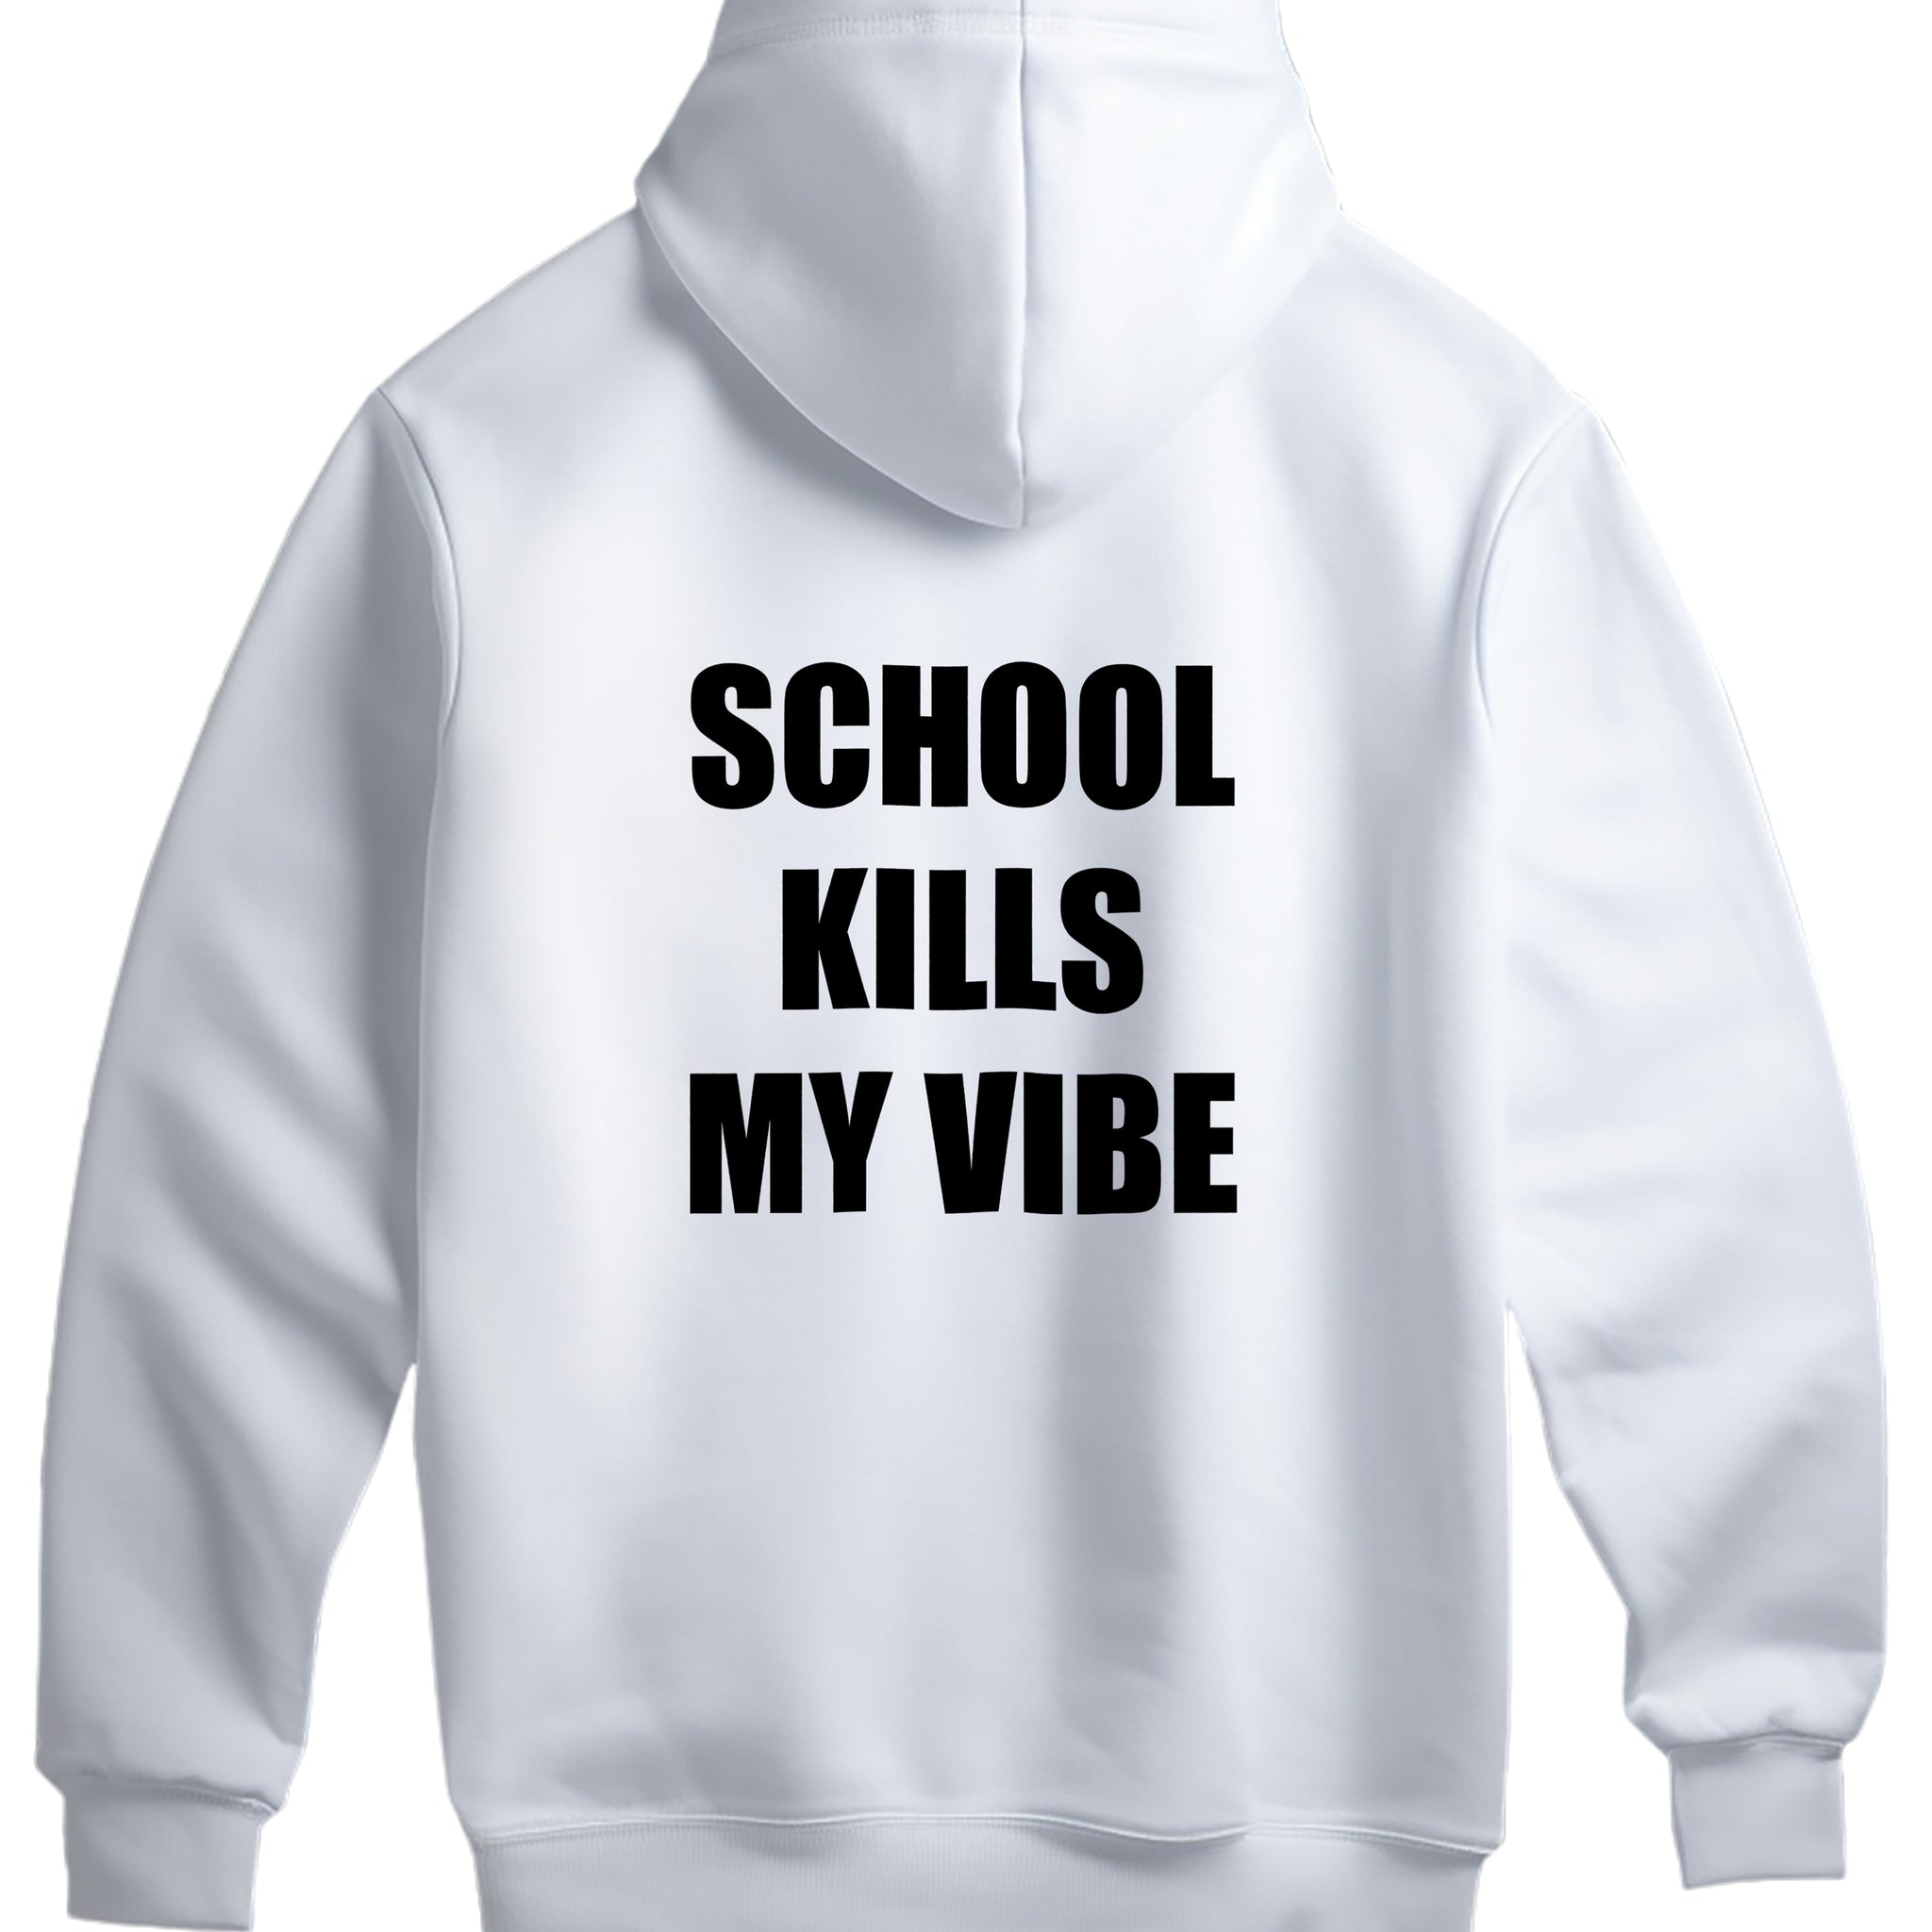 School Kills My Vibe Hoodie